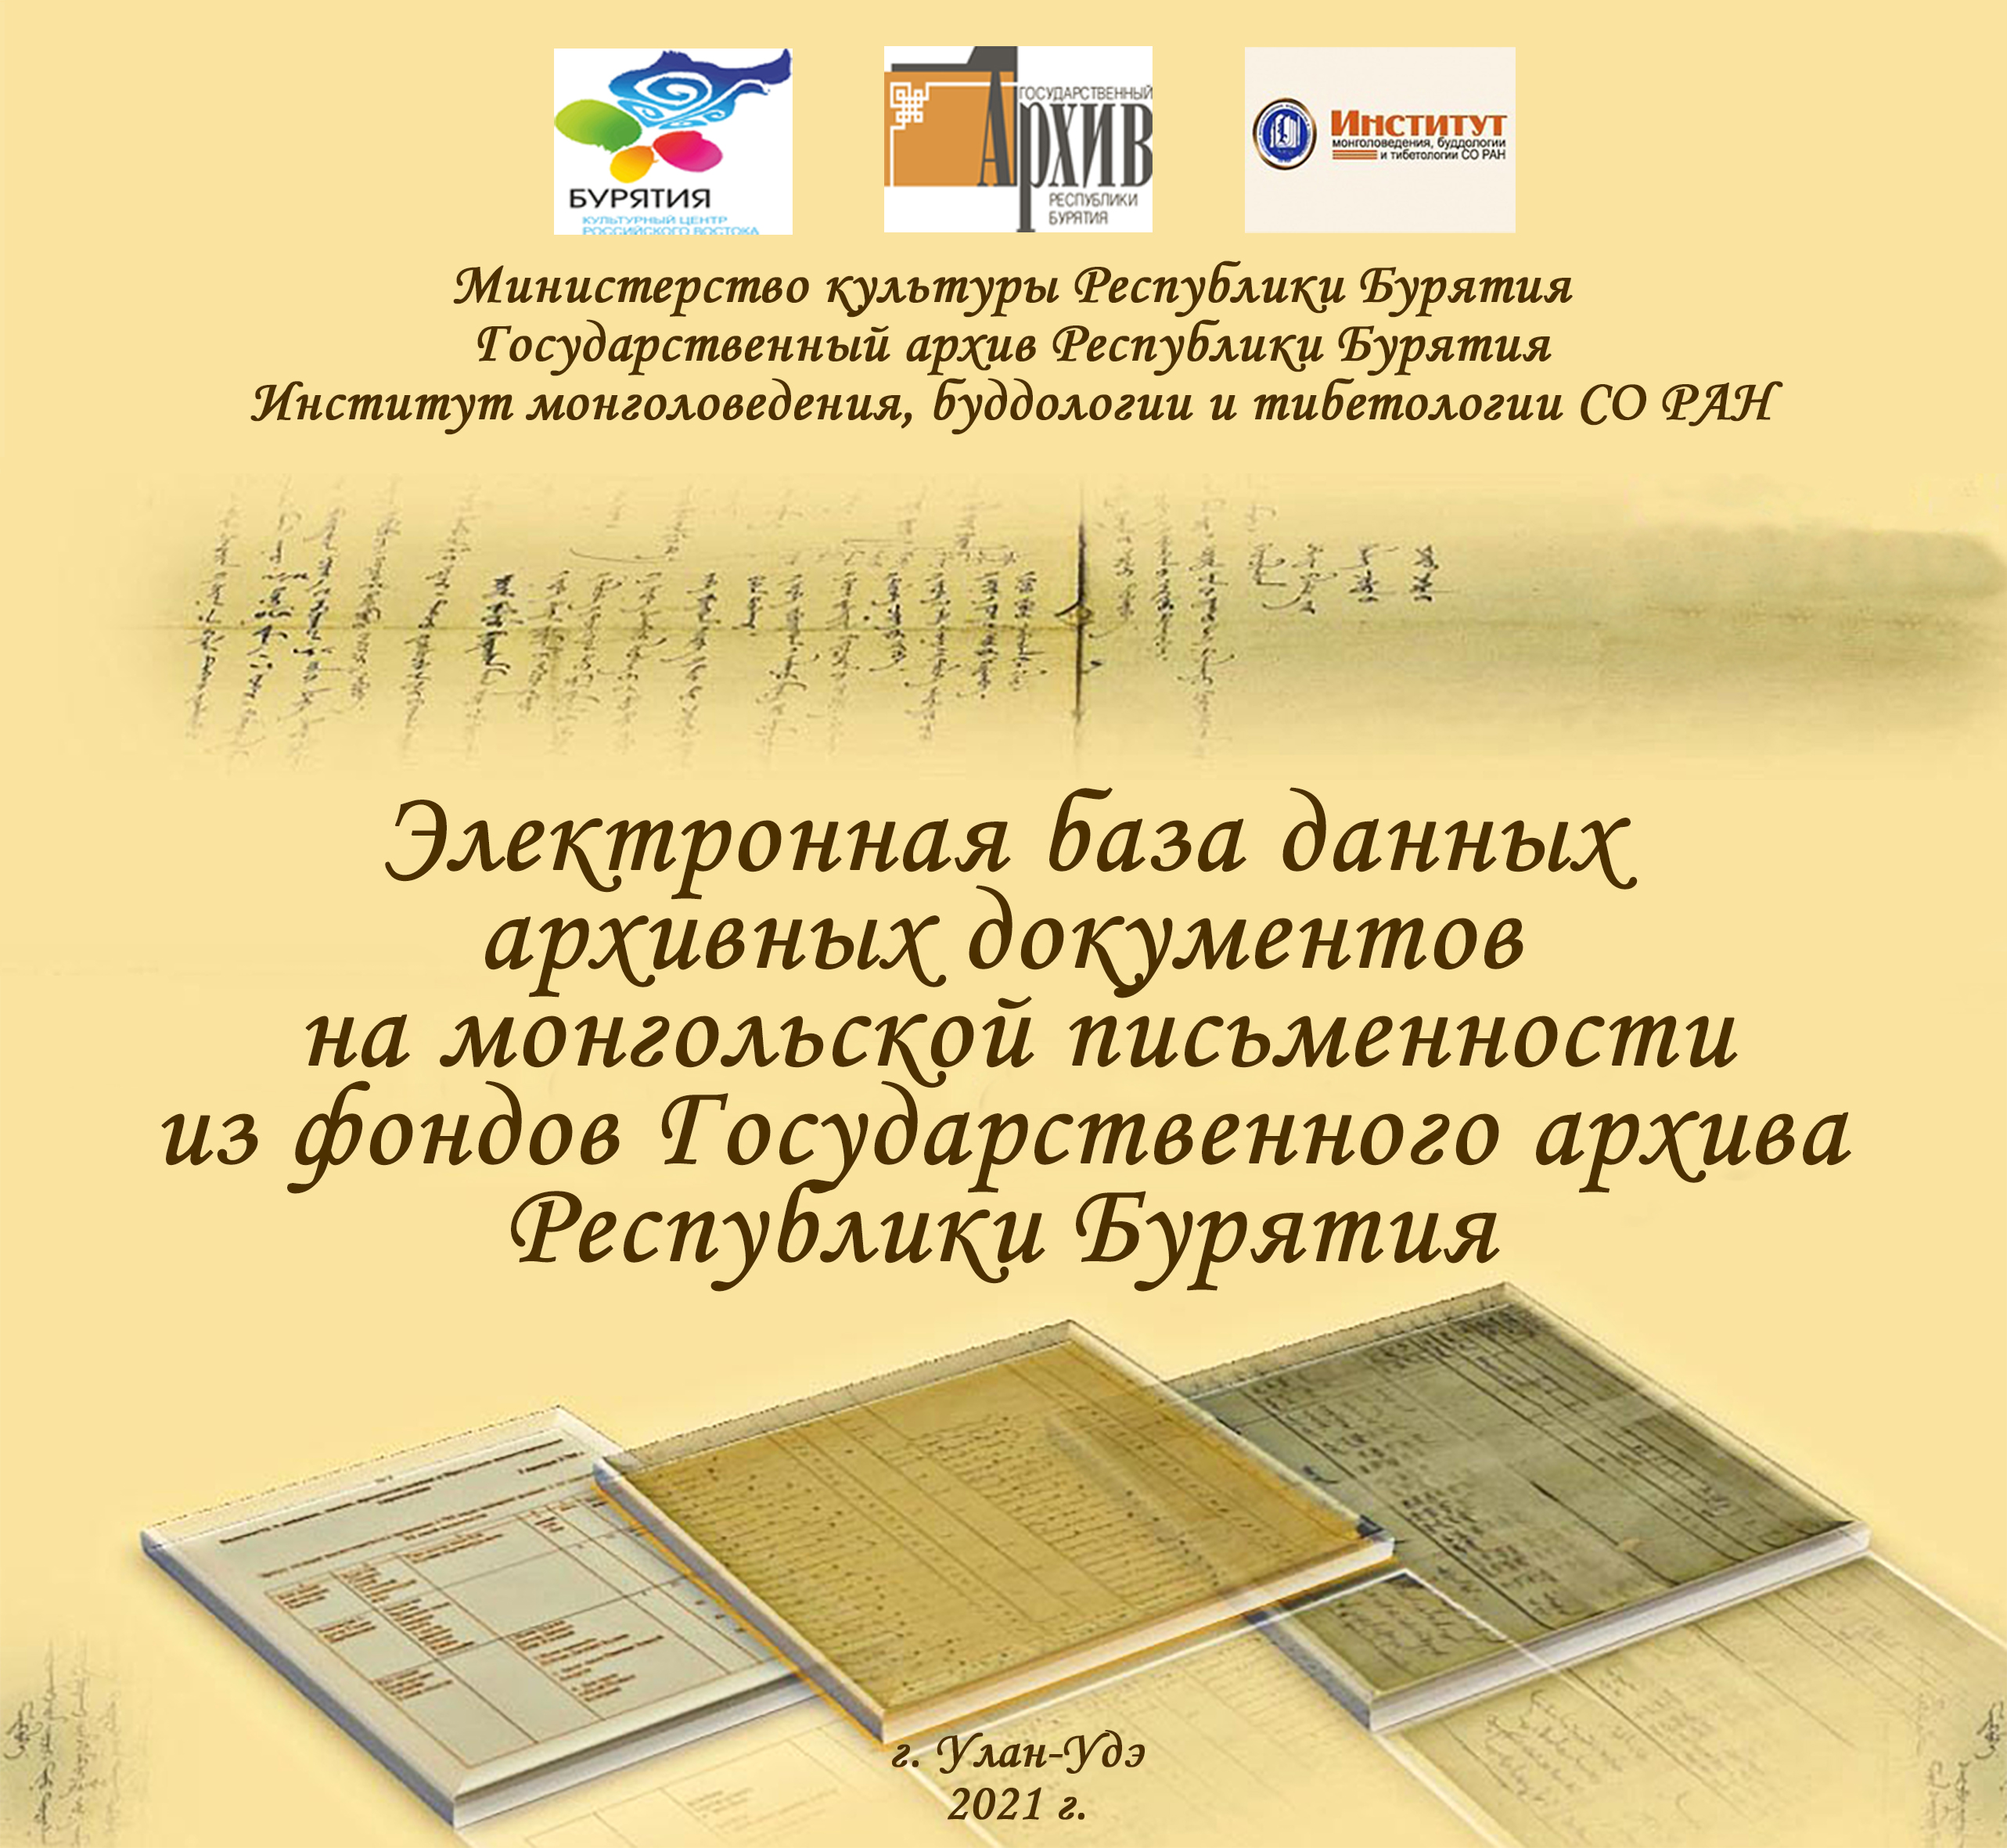 26 февраля 2021 г. состоится презентация электронной базы данных архивных документов на монгольской письменности